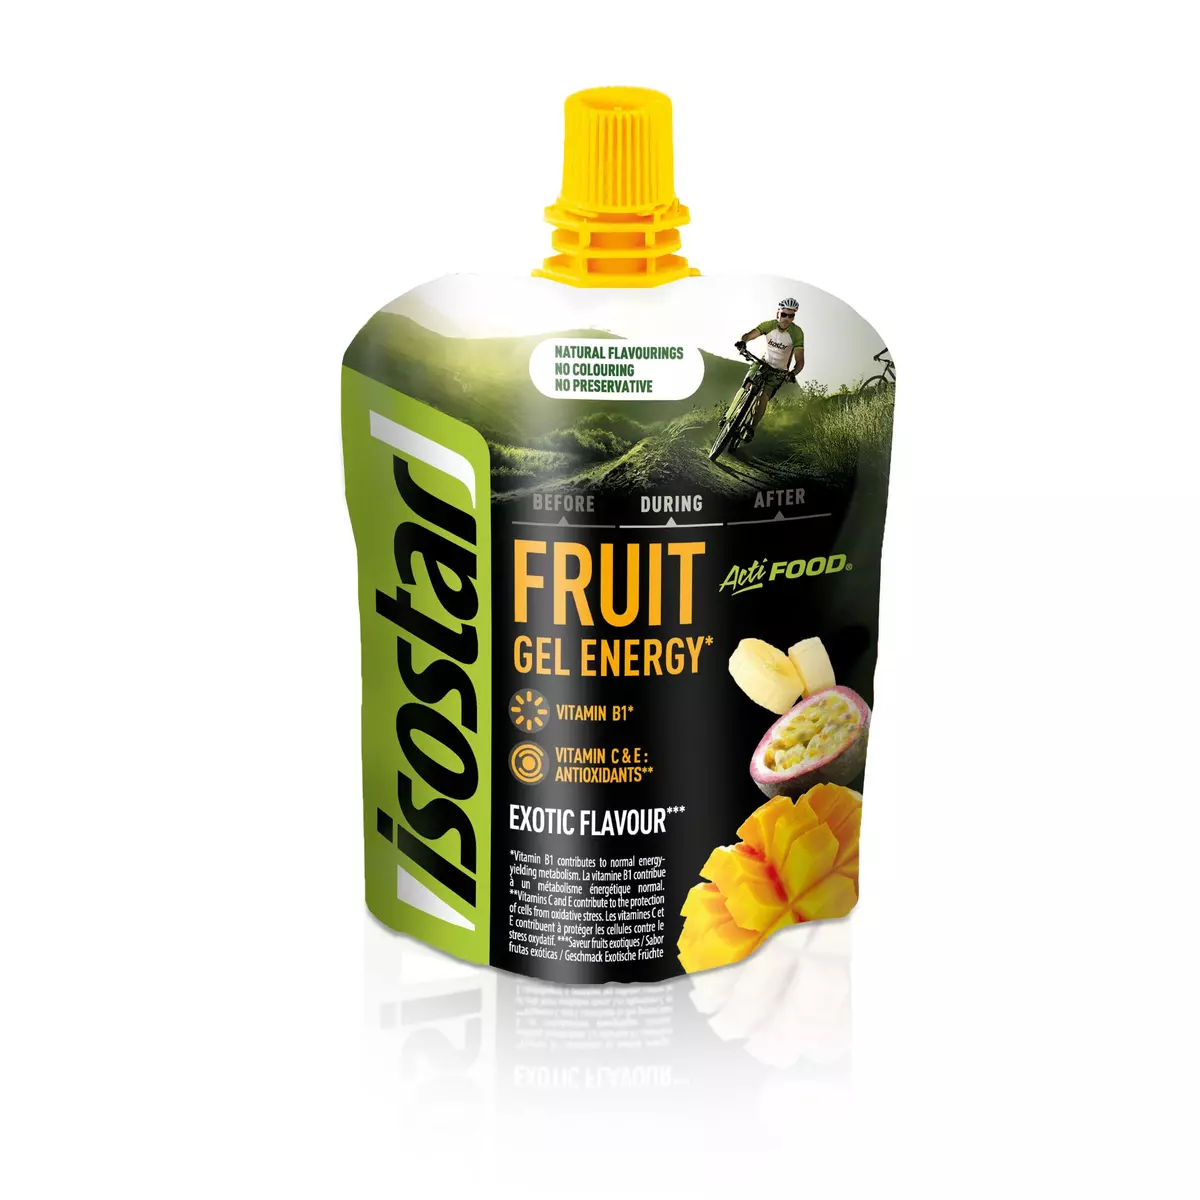 ISOSTAR Gel energy Actifood saveur fruit exotique 90g